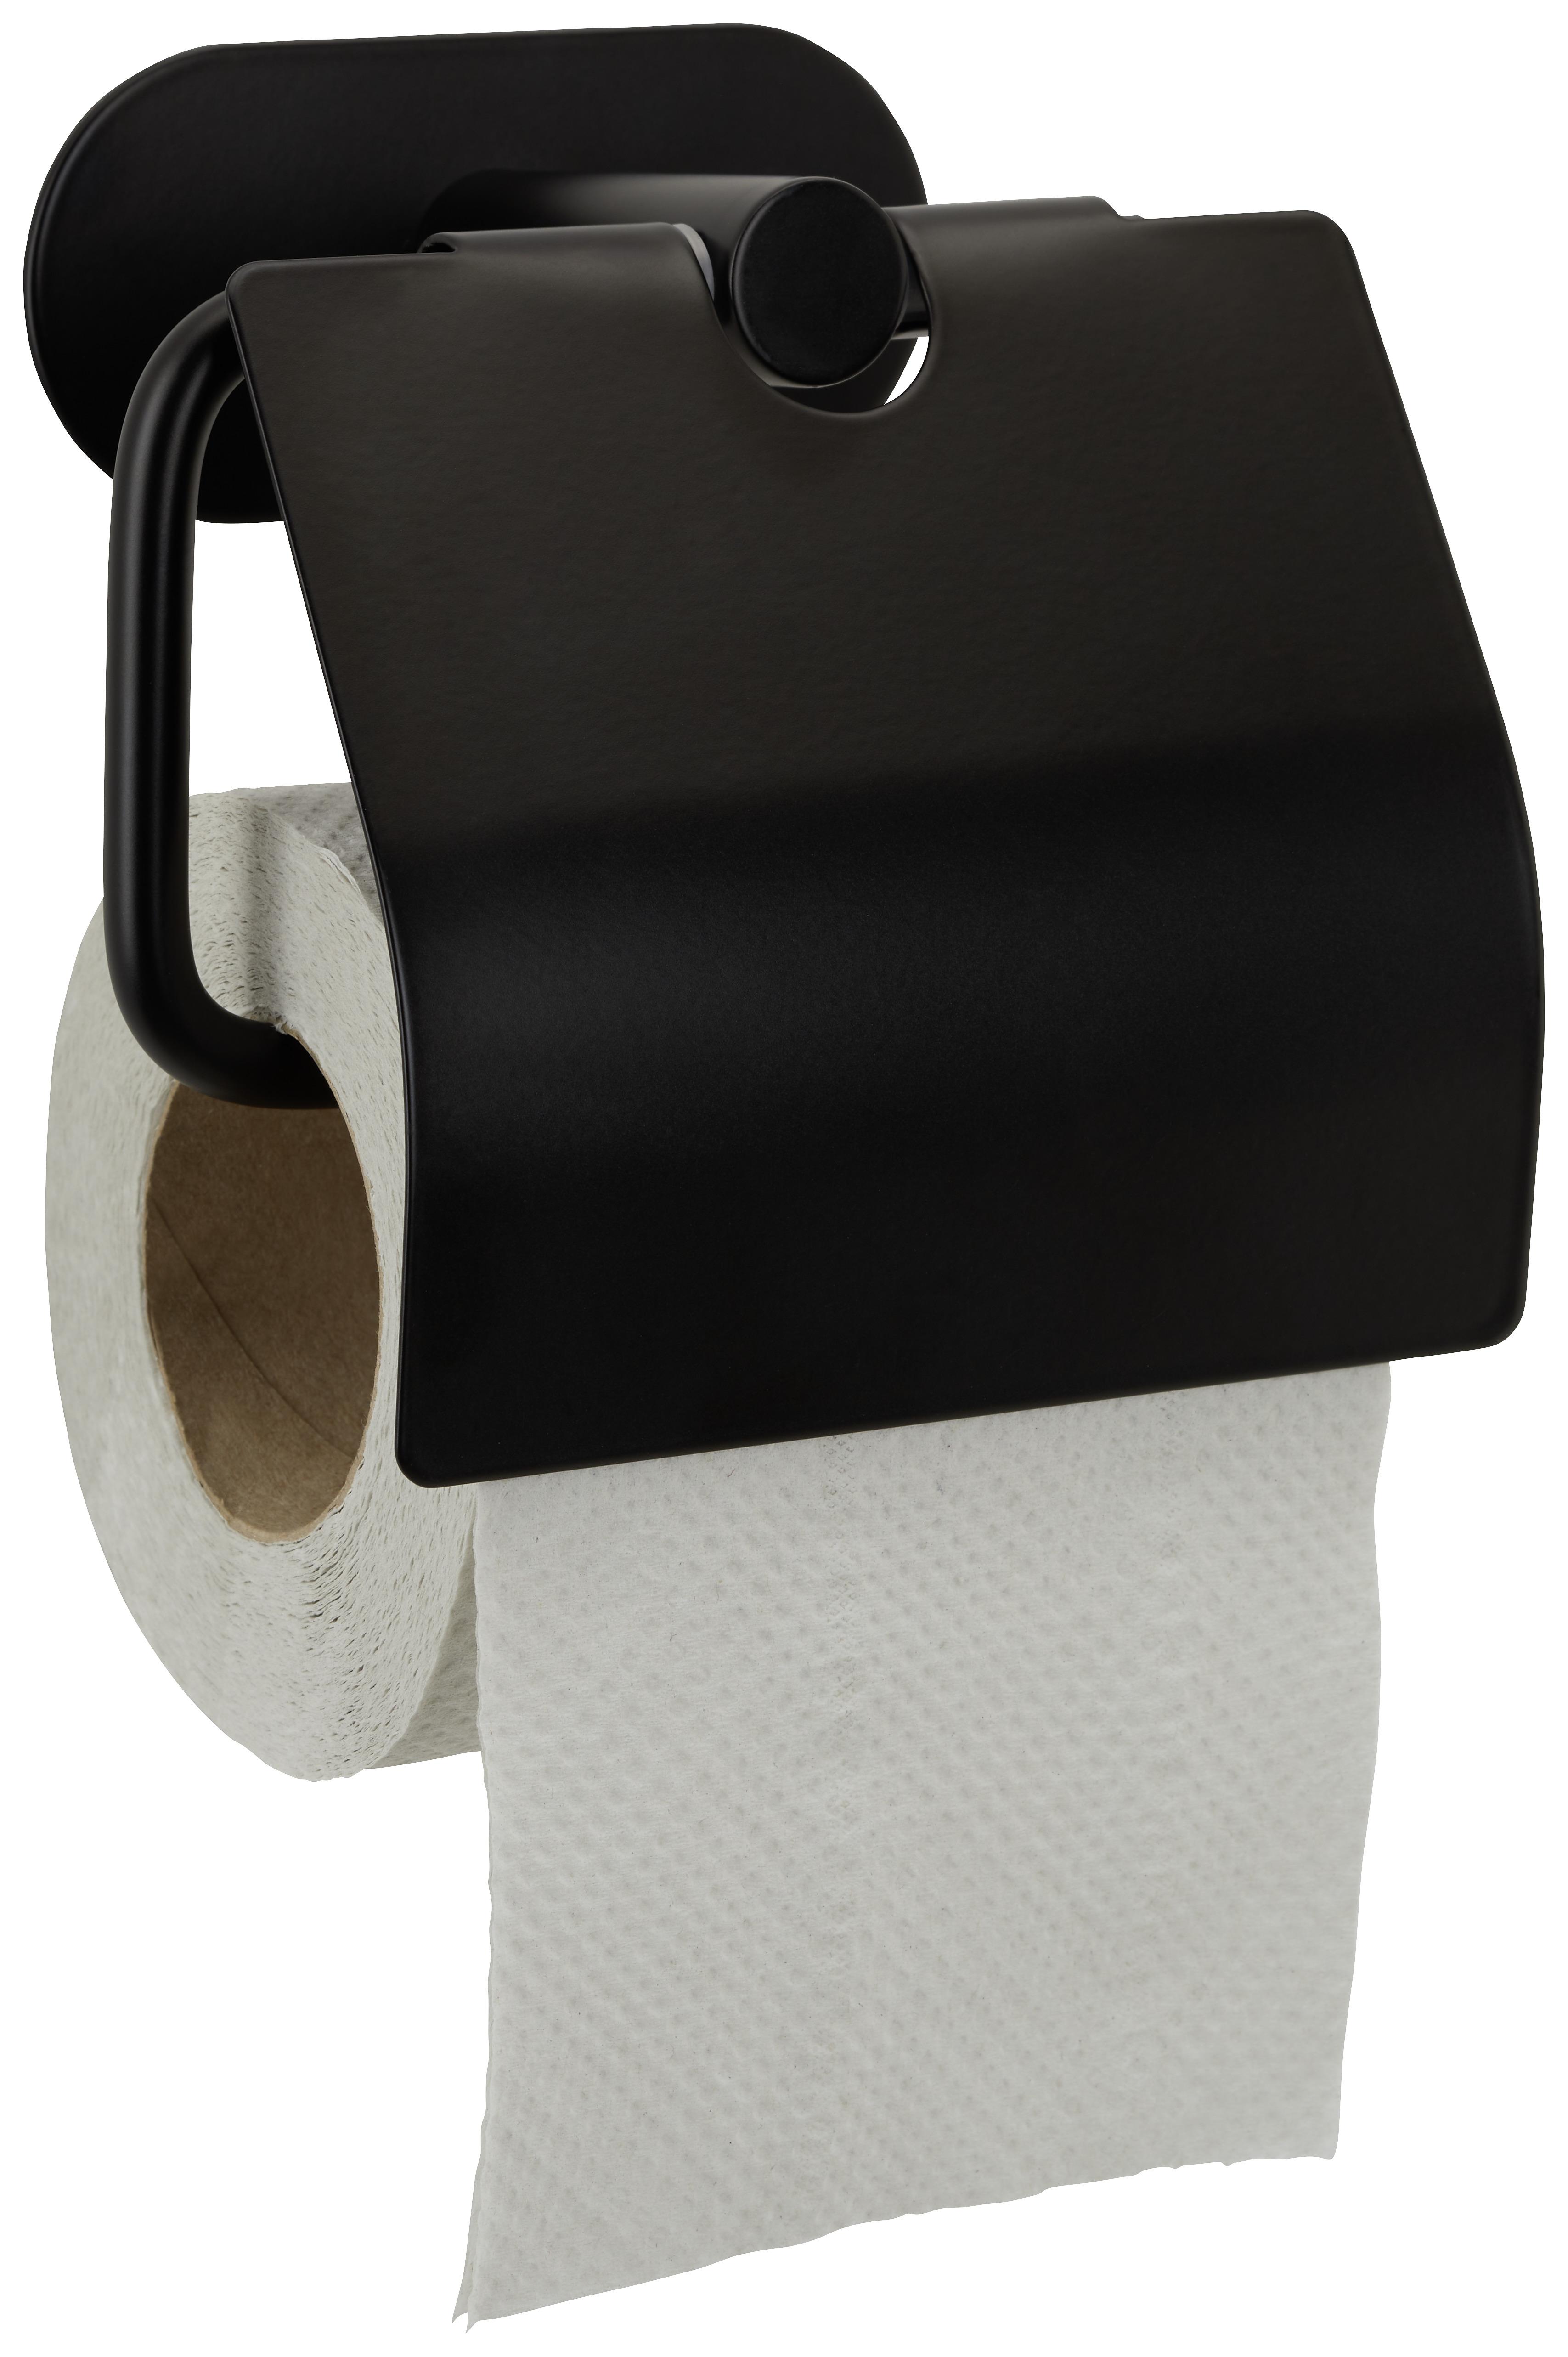 Držák Na Toaletní Papír Turbo-Loc -Sb- - černá, Moderní, kov (14/12,5/7cm) - Modern Living